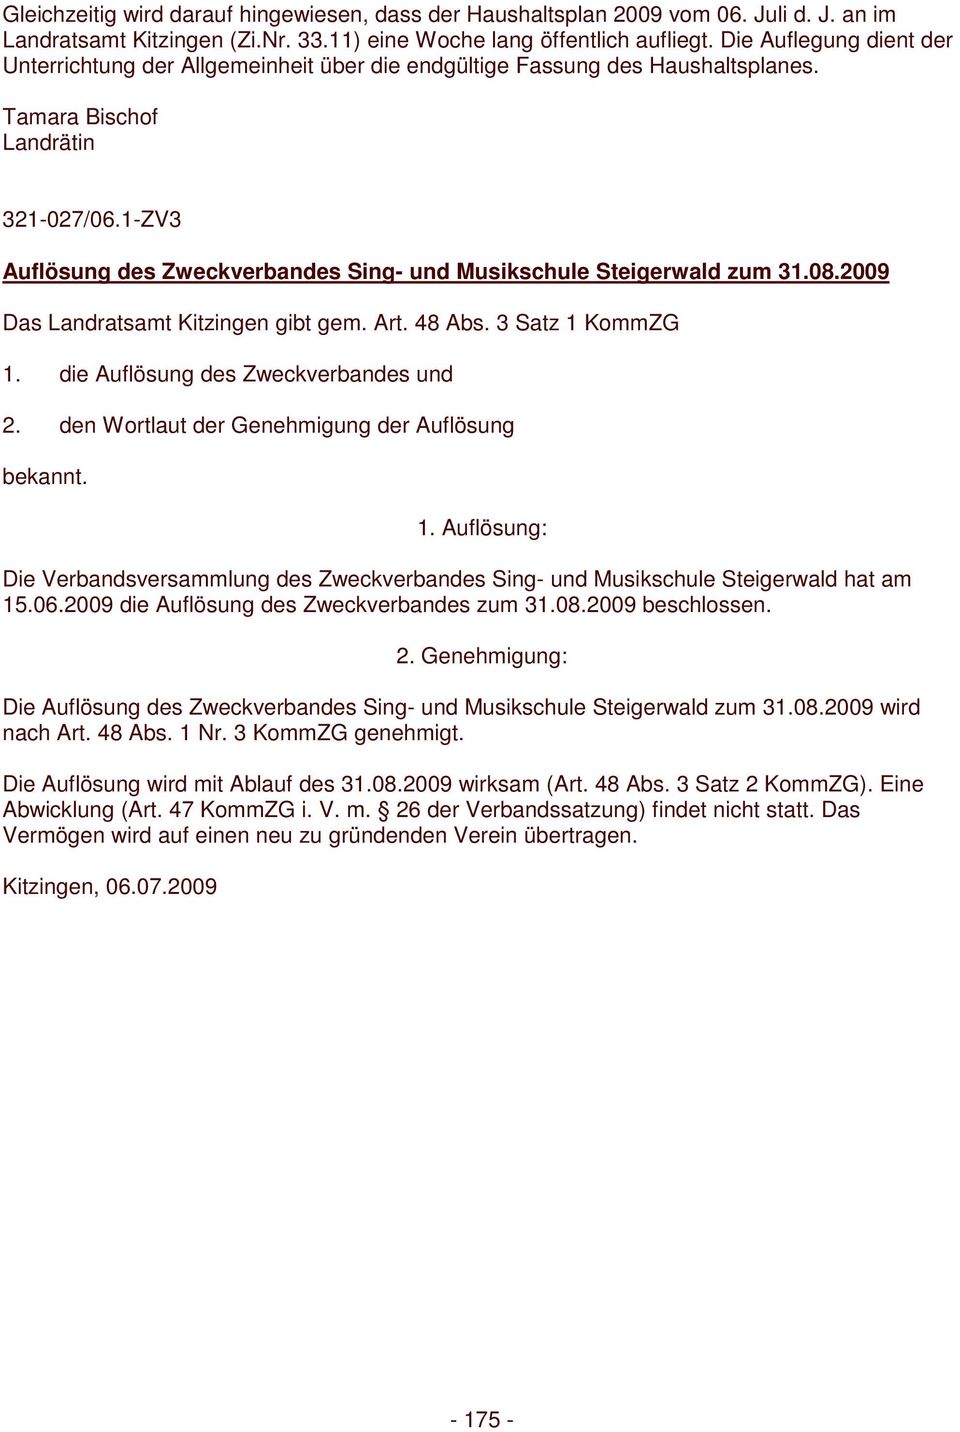 1-ZV3 Auflösung des Zweckverbandes Sing- und Musikschule Steigerwald zum 31.08.2009 Das Landratsamt Kitzingen gibt gem. Art. 48 Abs. 3 Satz 1 KommZG 1. die Auflösung des Zweckverbandes und 2.